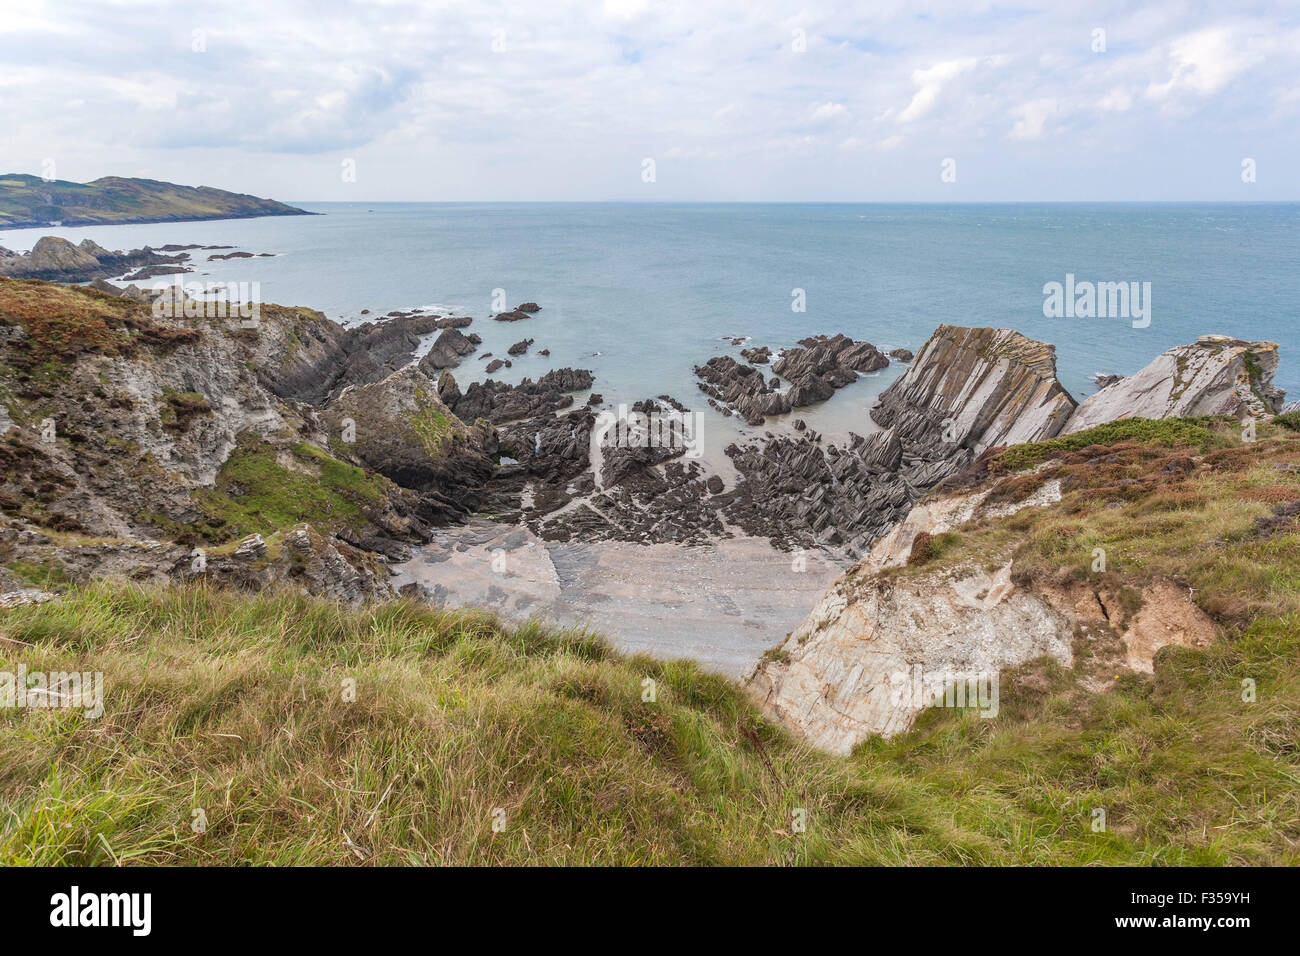 Rochers déchiquetés dans l'érosion côtière, Bull point, Devon, West Country, Angleterre, ROYAUME-UNI. Banque D'Images